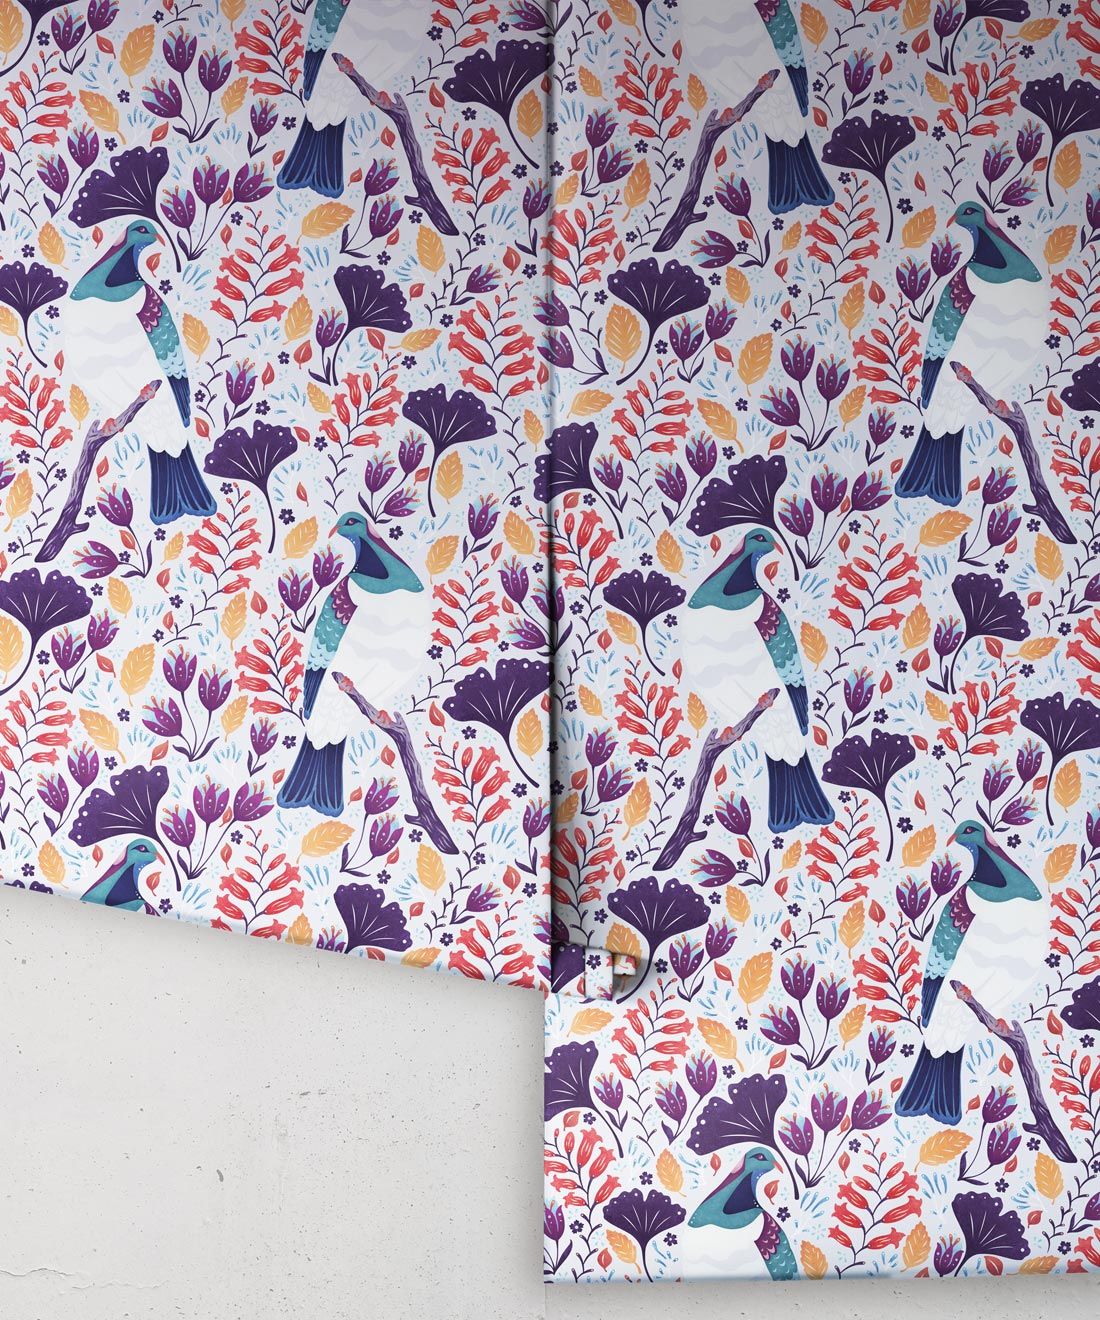 Kereru Wallpaper • Wood Pigeon• Bird Wallpaper •Assorted Color Wallpaper Rolls